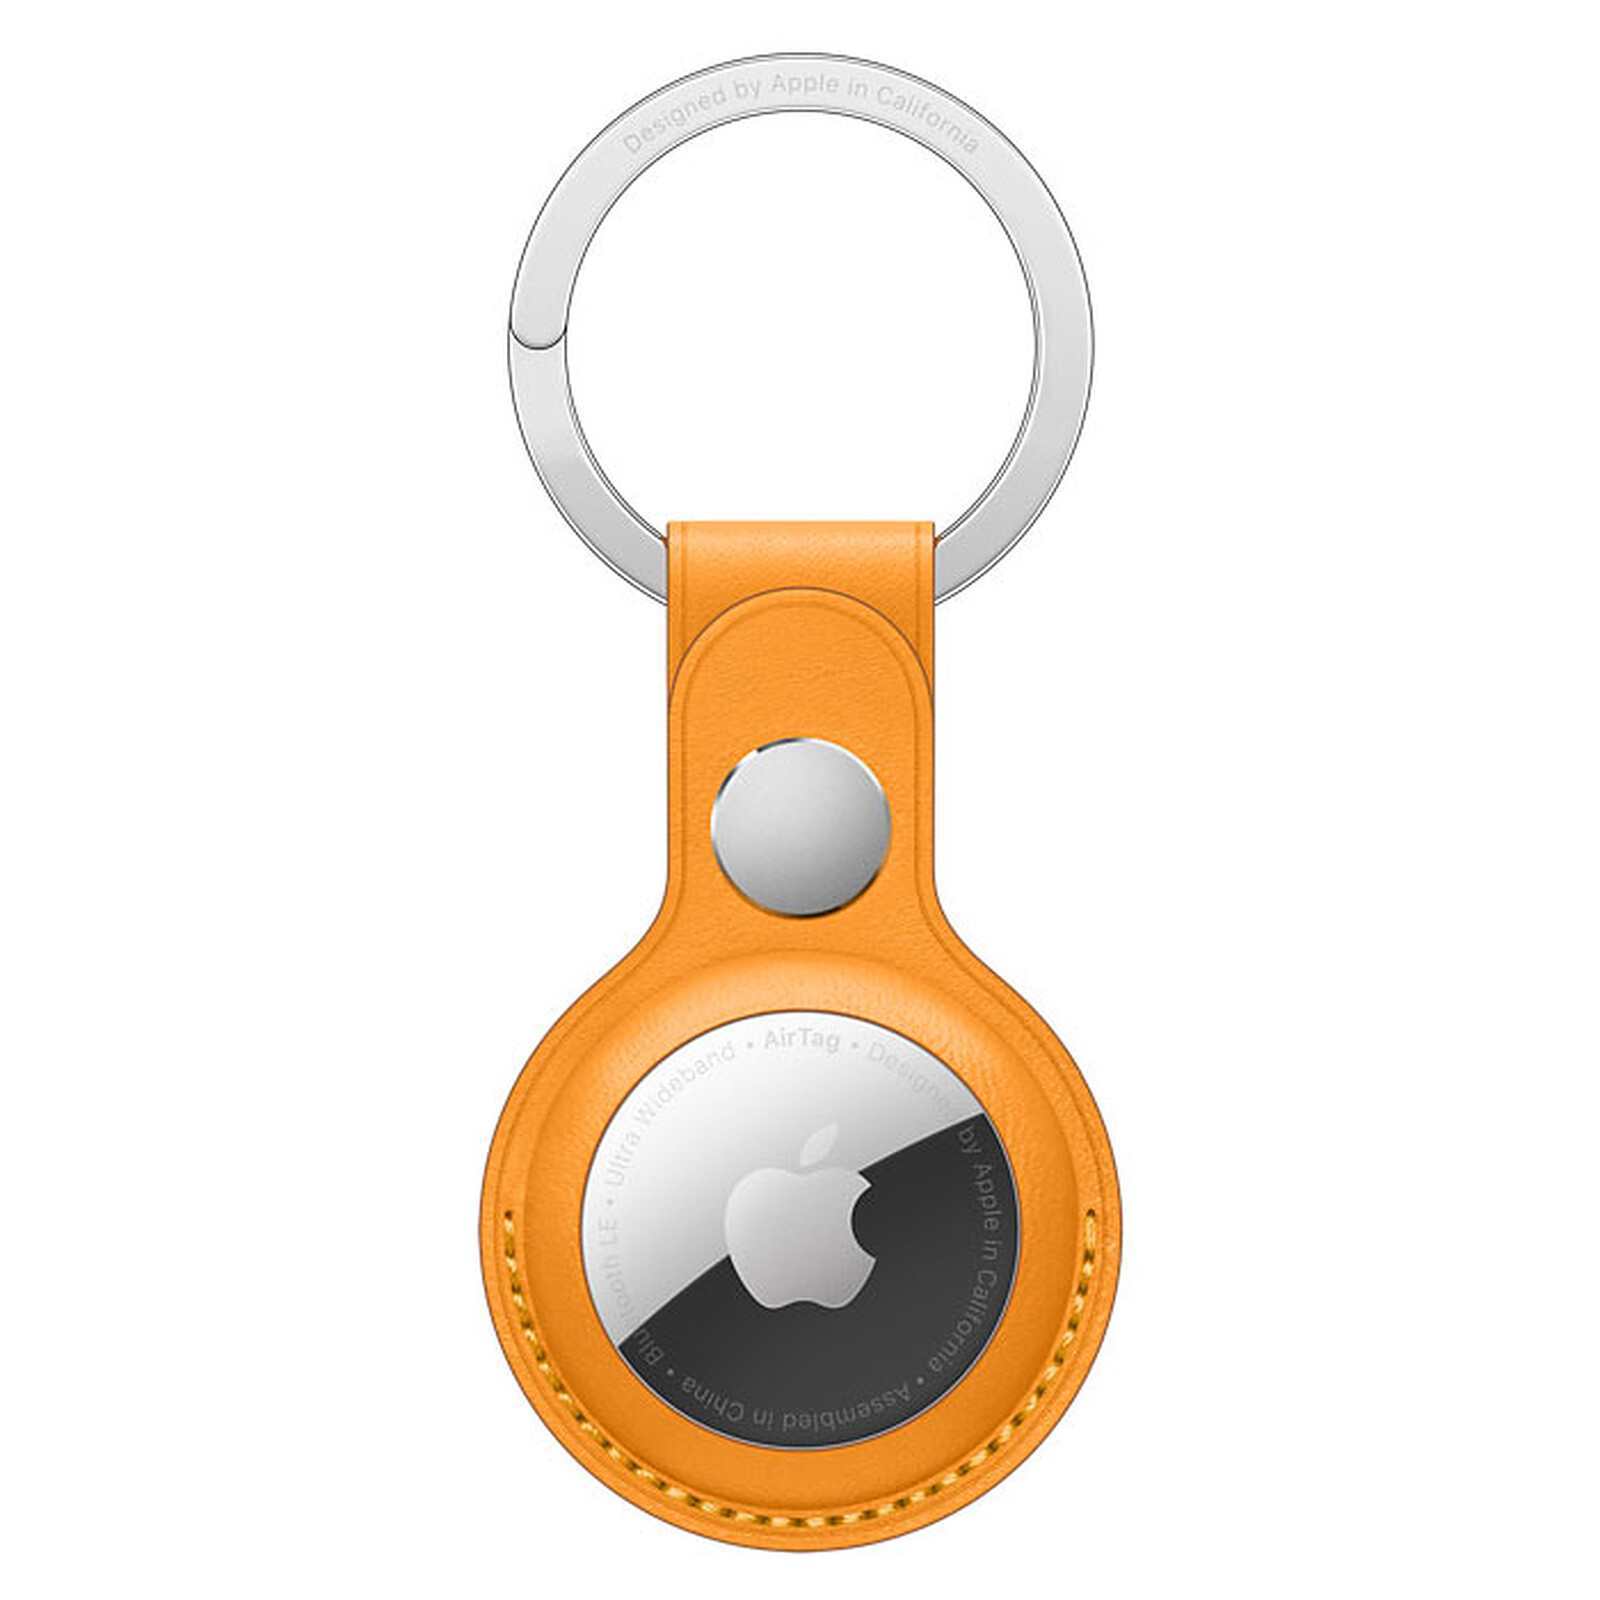 Trois porte-clés AIRTAG, Apple AIRTAG ouvert, cellule de bouton